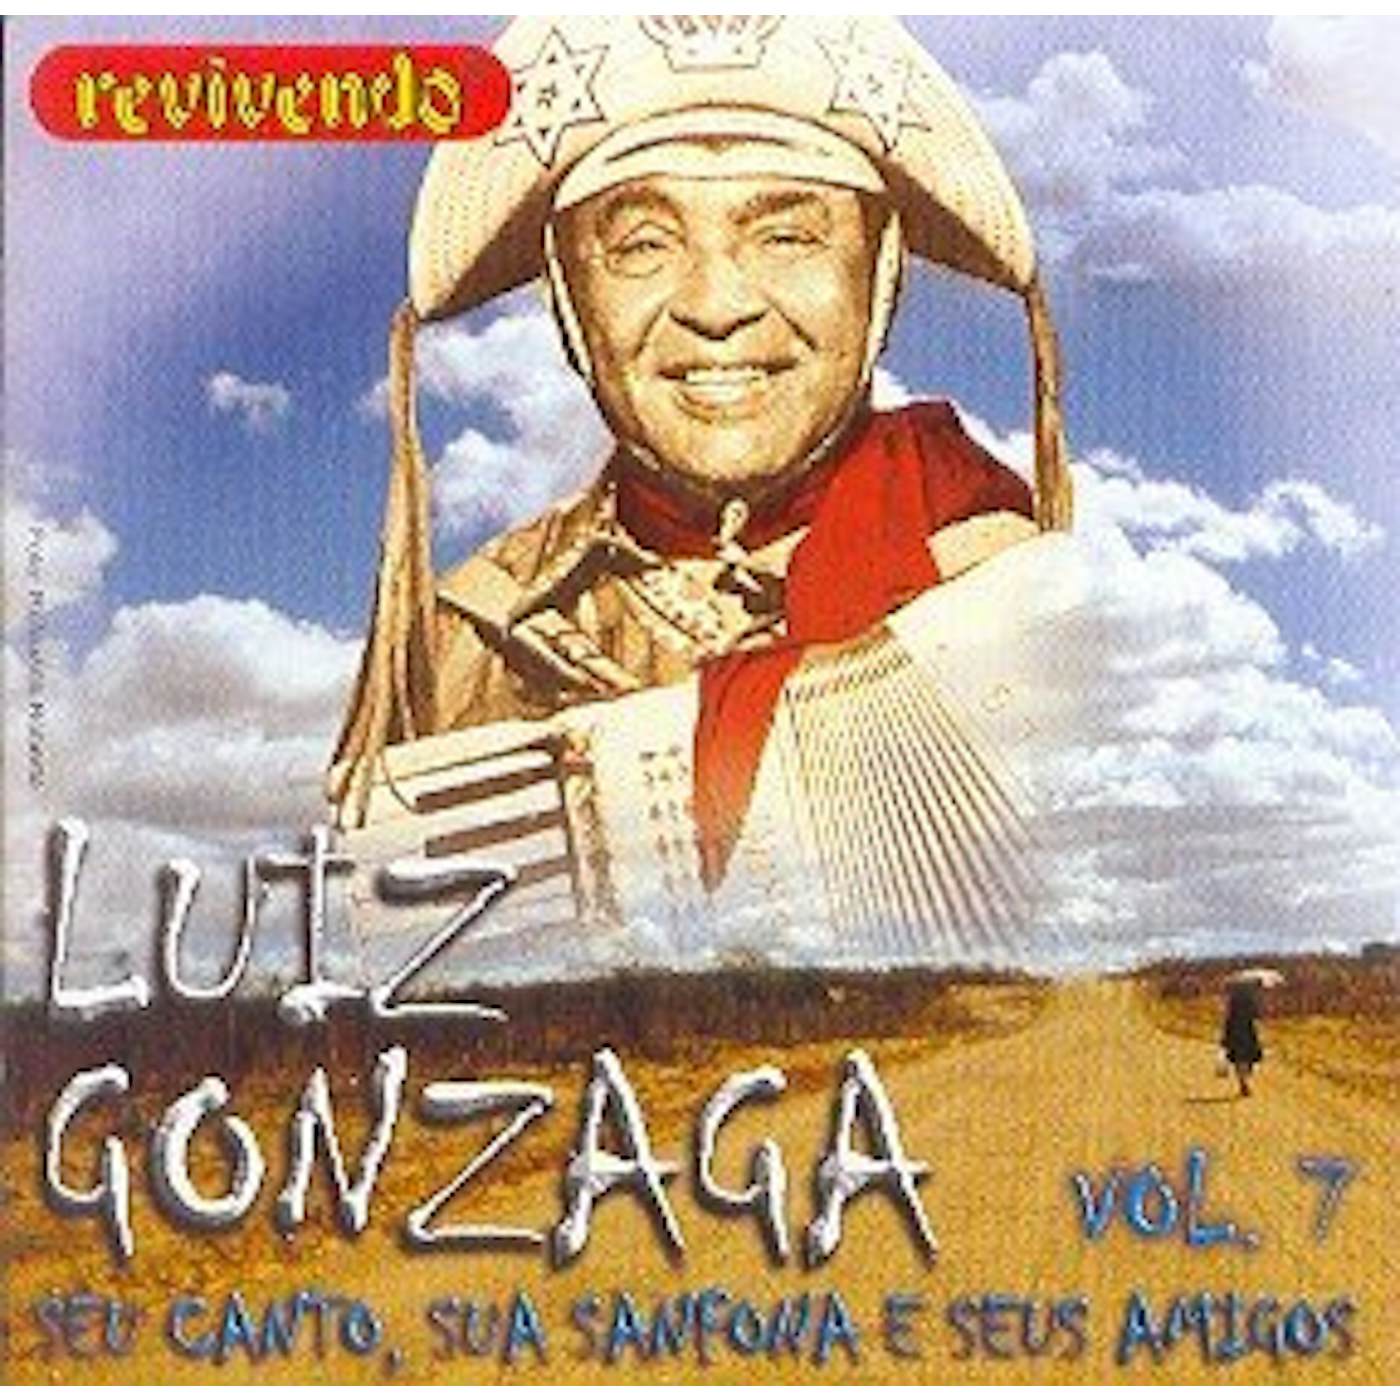 Luiz Gonzaga SEU CANTO SUA SANFONA E SEUS AMIGOS 7 CD